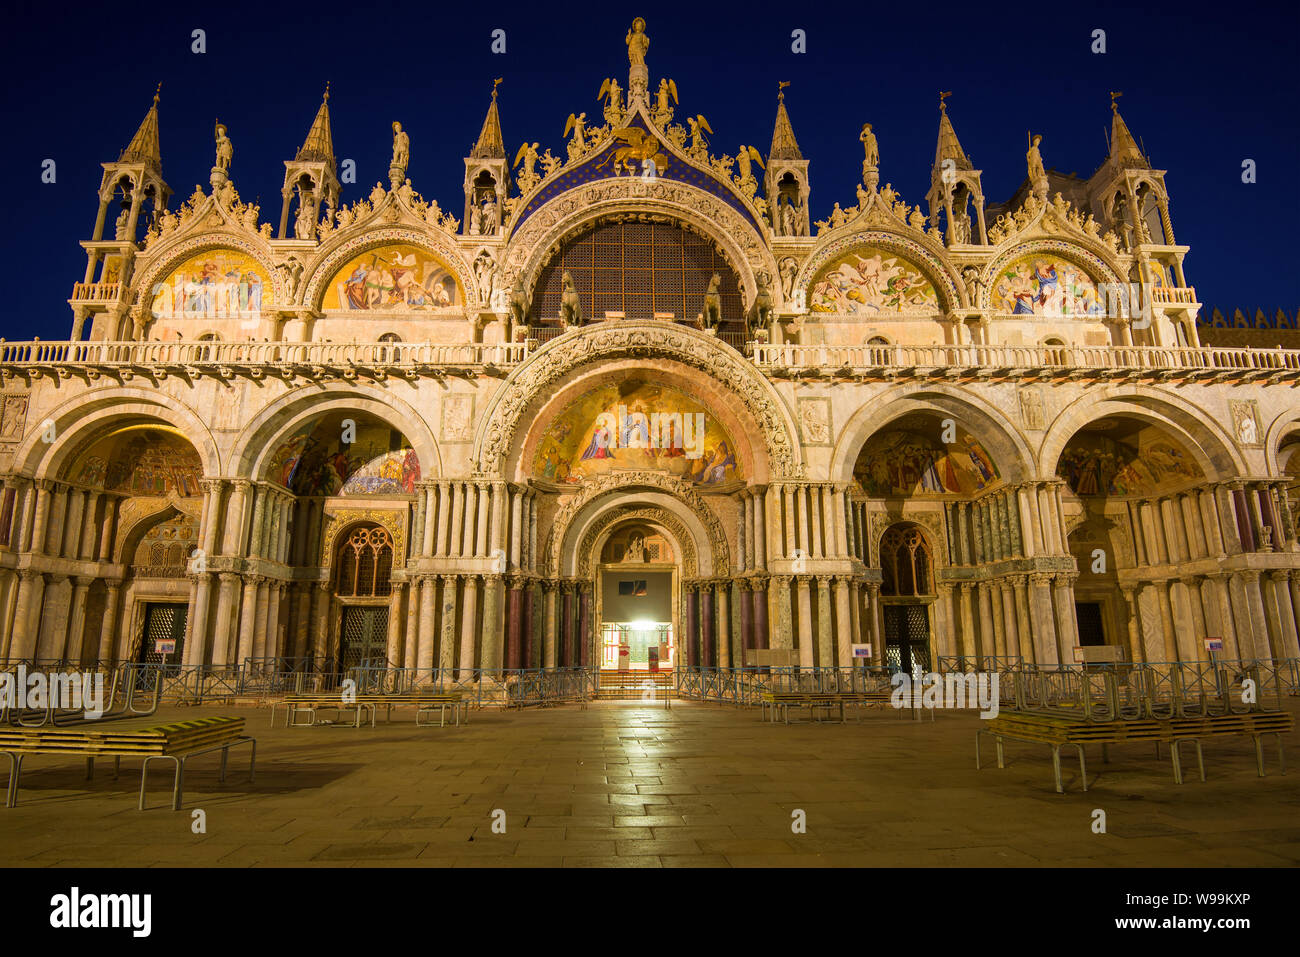 6 faits fascinants sur la basilique Saint-Marc - Promenades en Italie